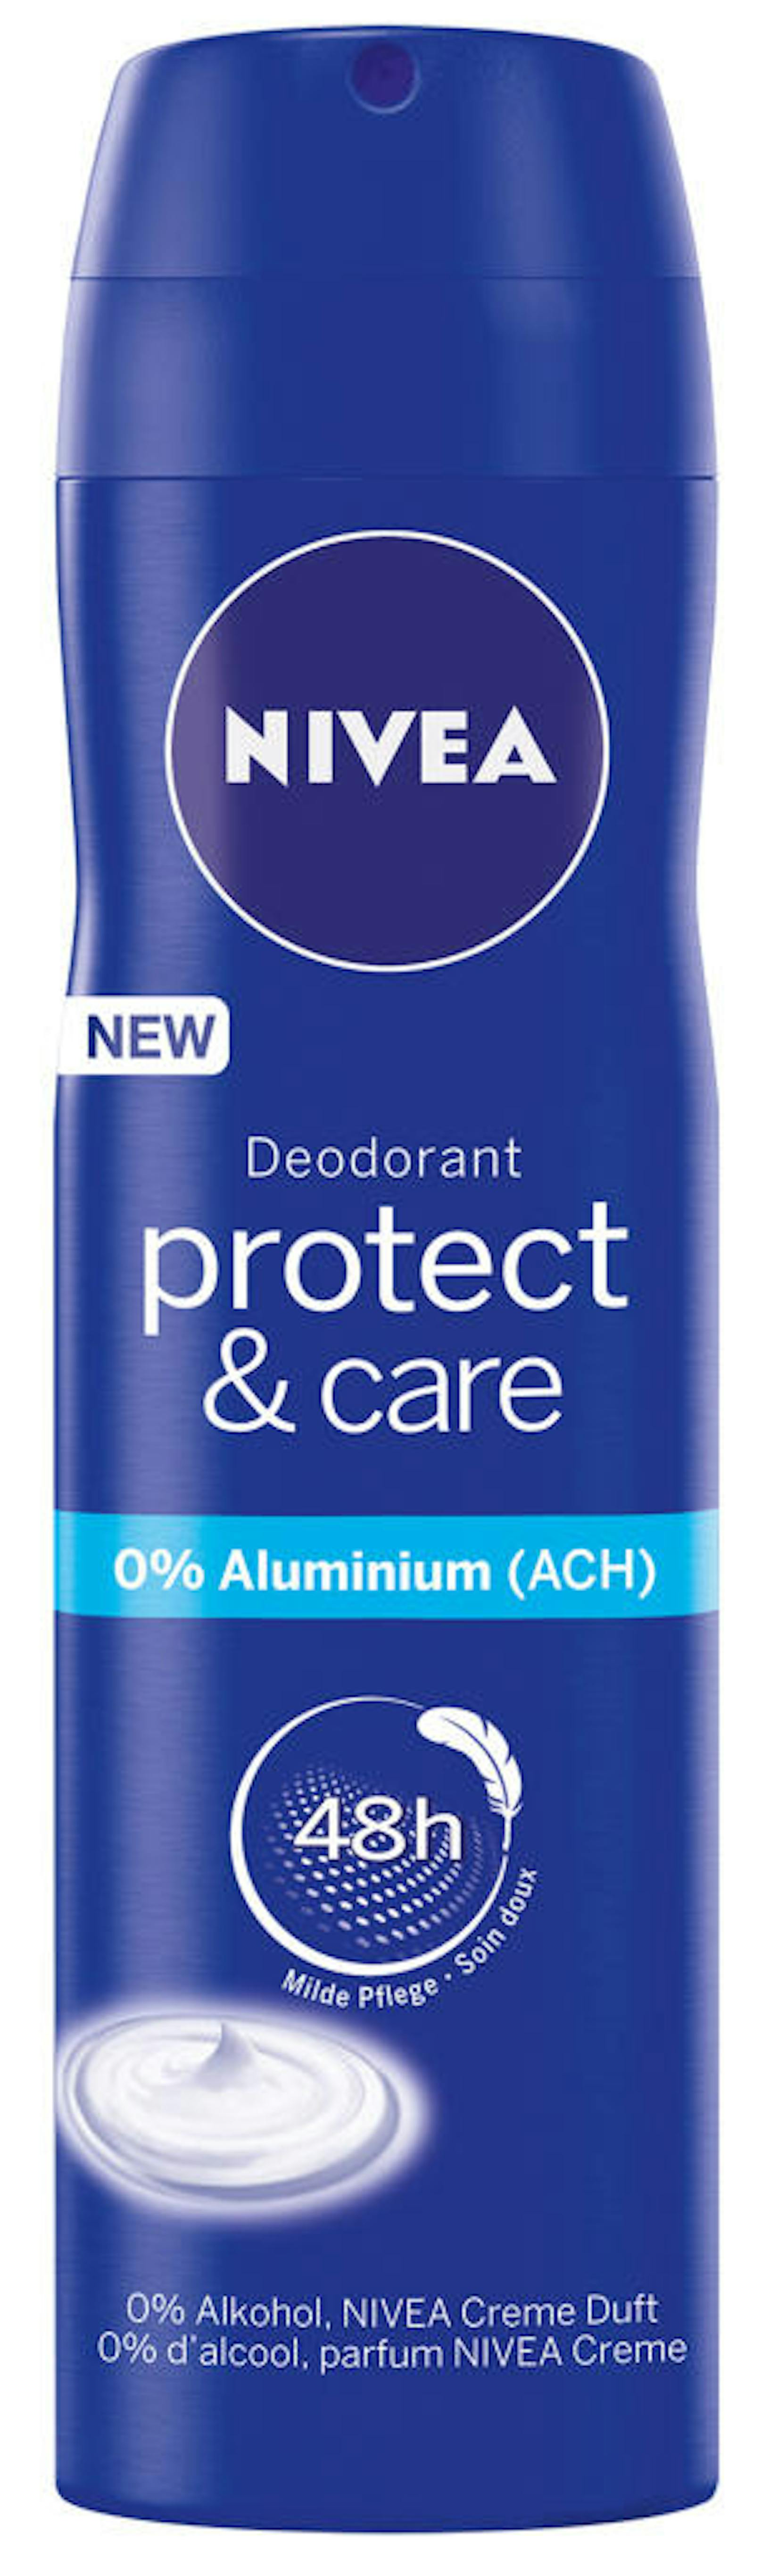 NIVEA_Der Deo-Spray Protect& Care von Nivea kommt kommt ebenfalls ohne Aluminium aus und soll 48 Stunden schützen. Erhältlich um 2,99 Euro.